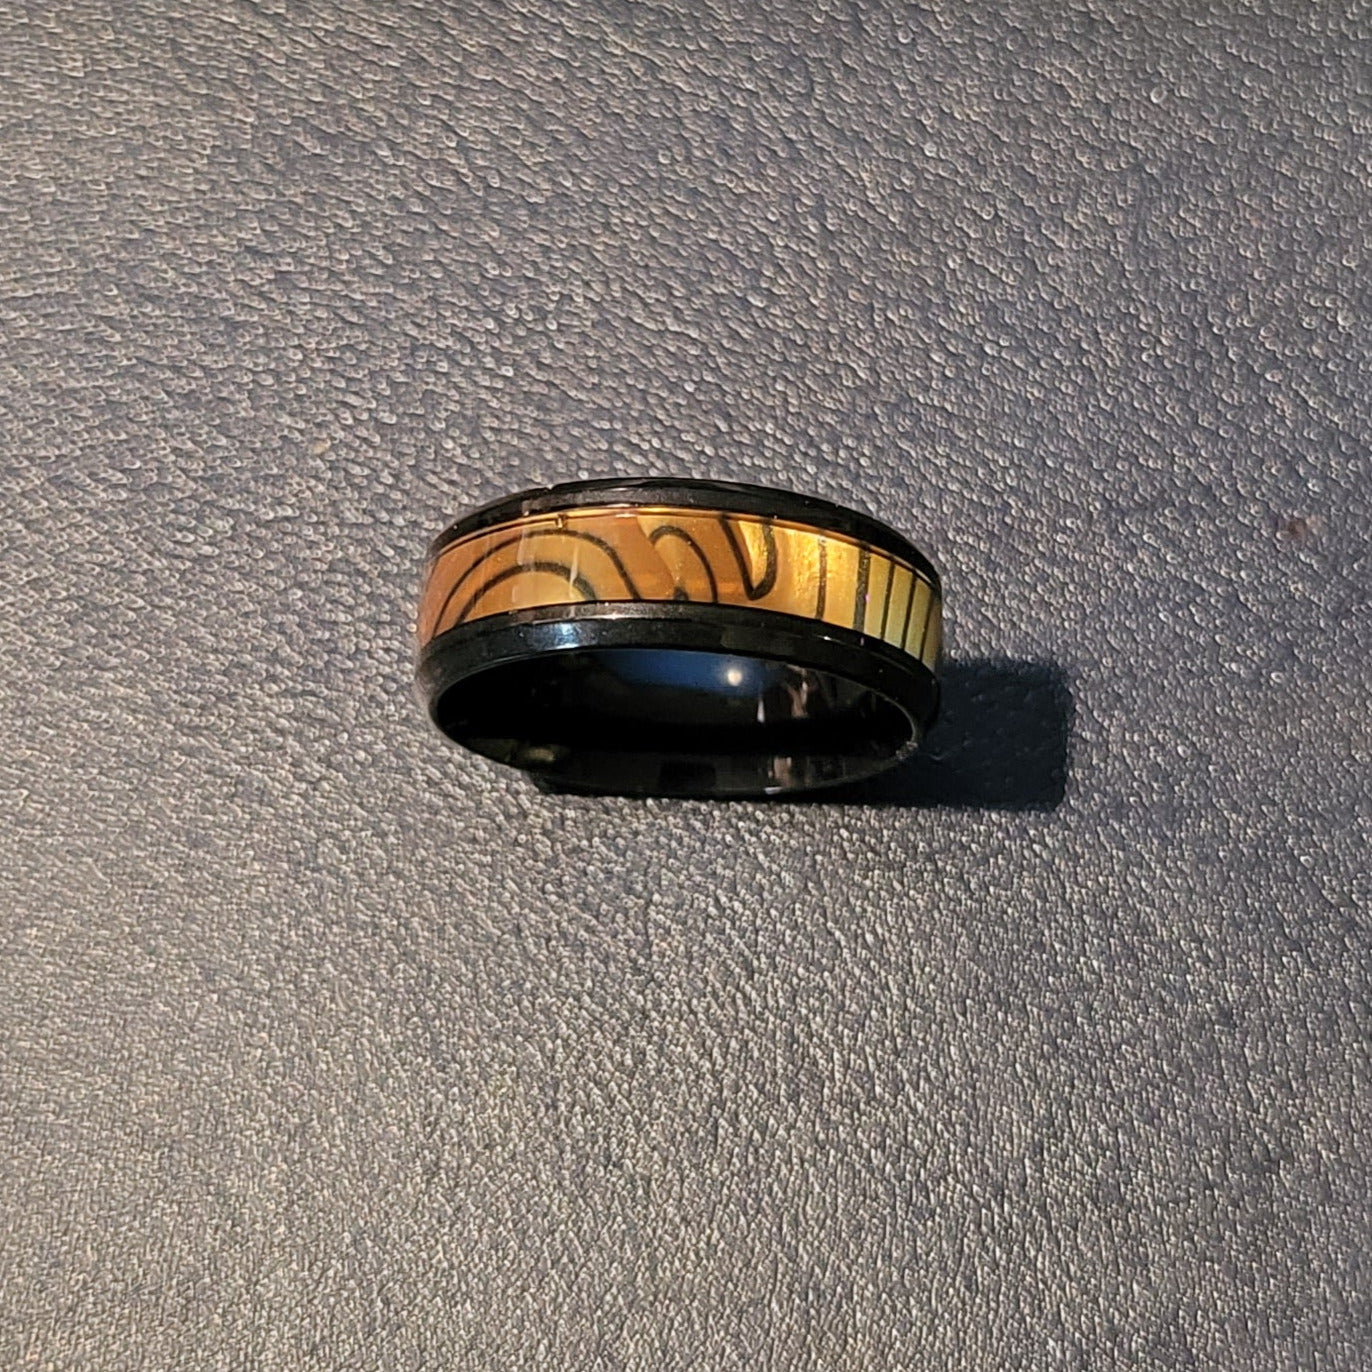 Think Engraved Promise Ring Custom Engraved Men's Tiger's Eye Opal Promise Ring - Guy's Handwriting Promise Ring